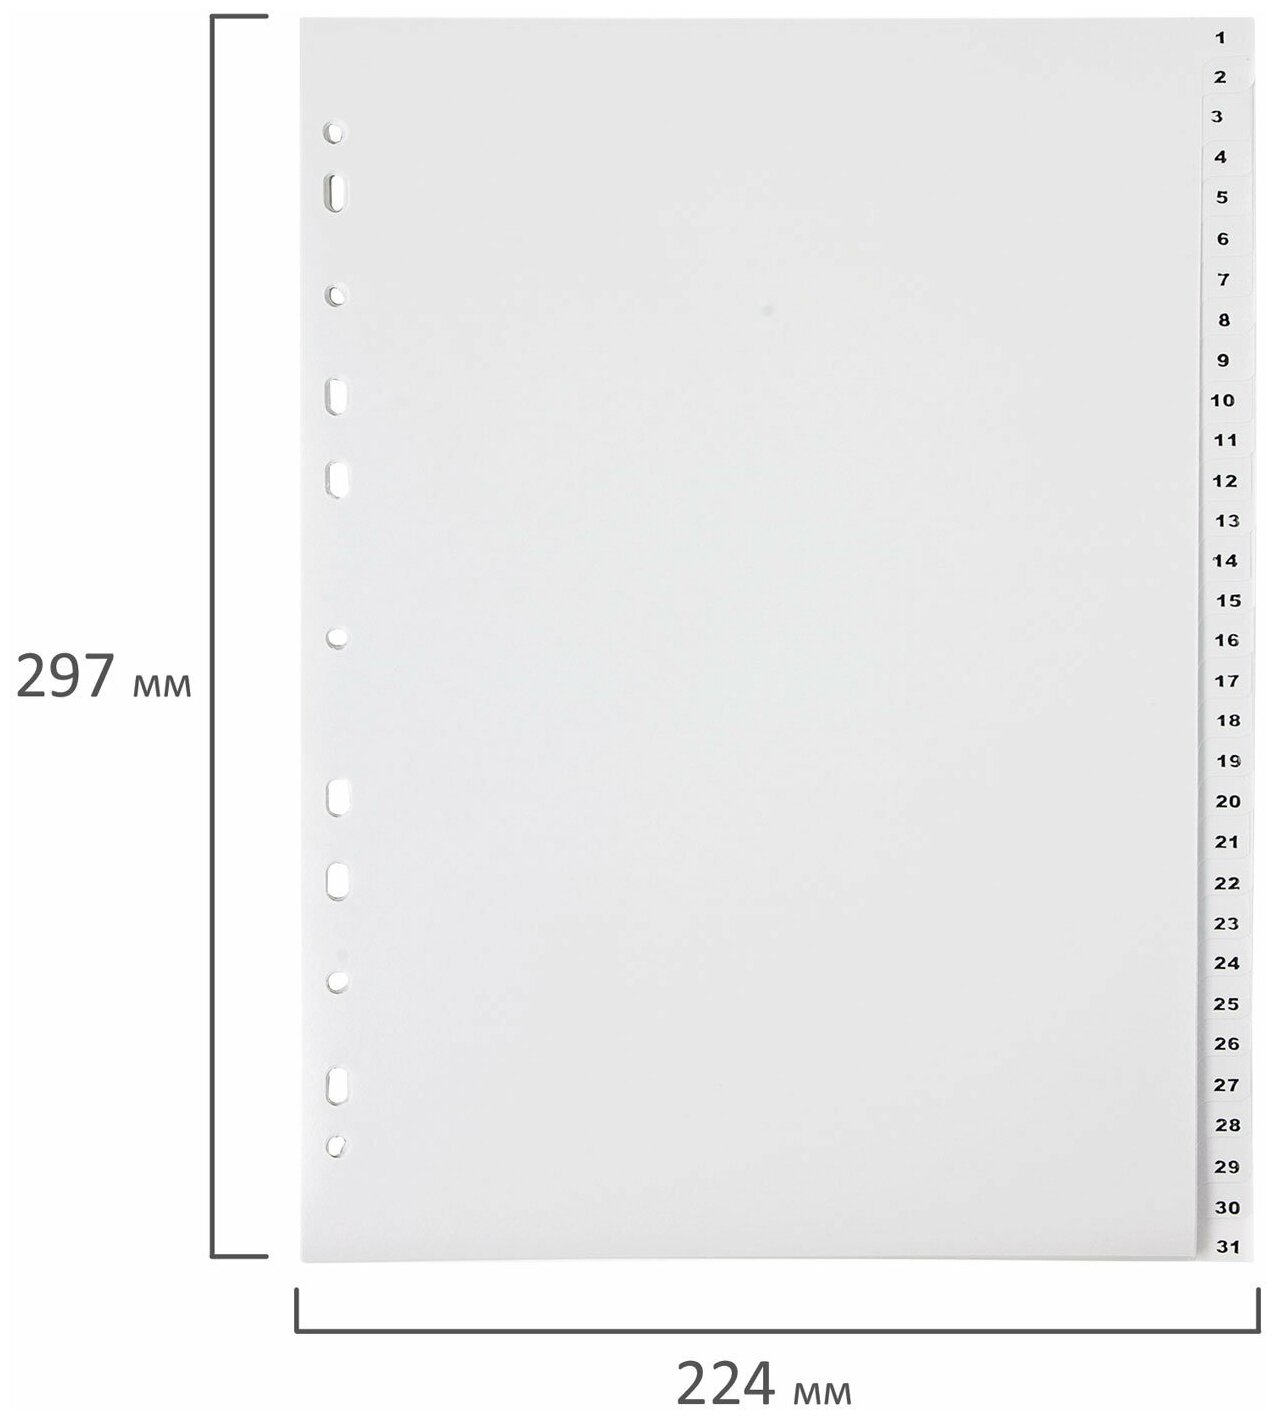 Разделитель пластиковый ОФИСМАГ, А4, 31 лист, цифровой 1-31, оглавление, серый, Россия, 225605 - фото №4